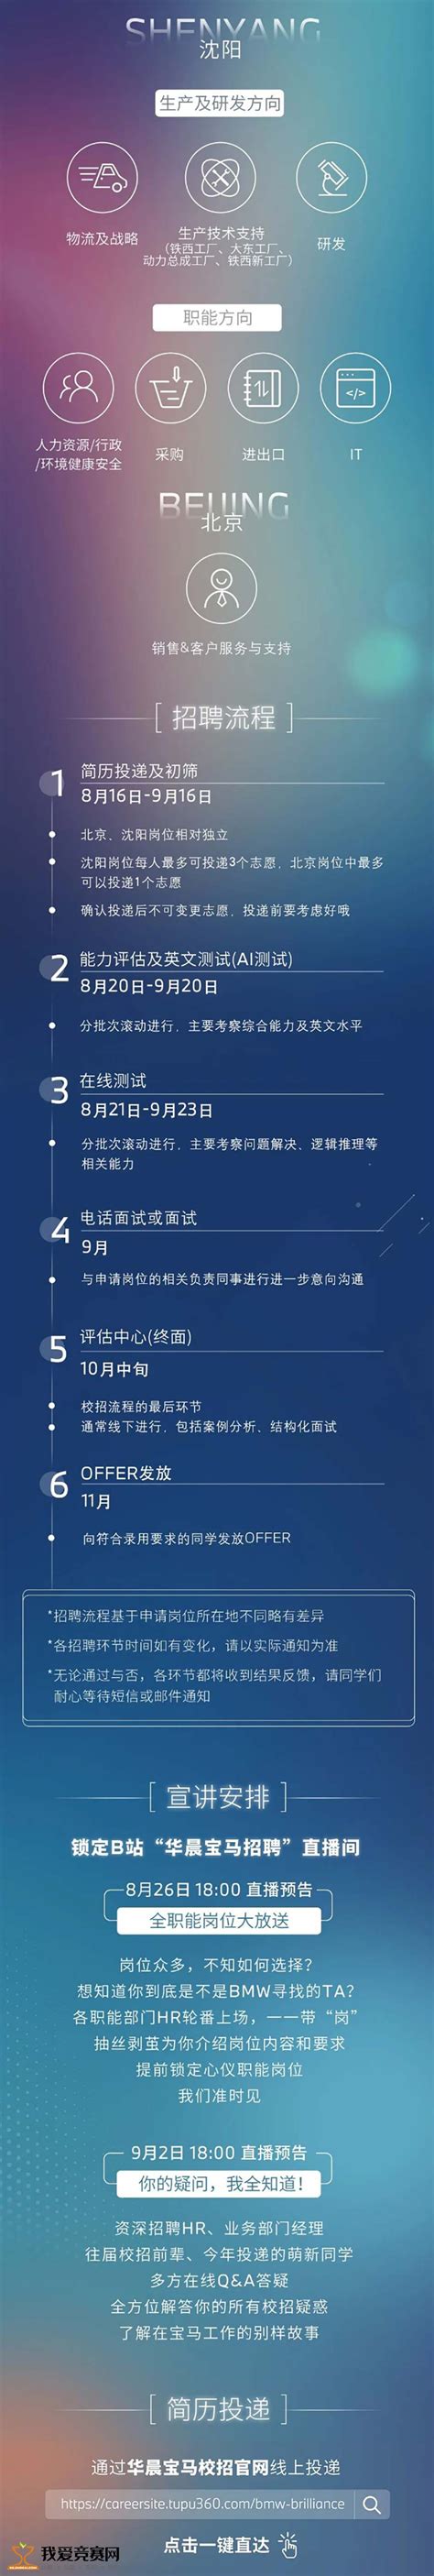 华晨宝马 招聘信息-辽宁工业大学就业创业网